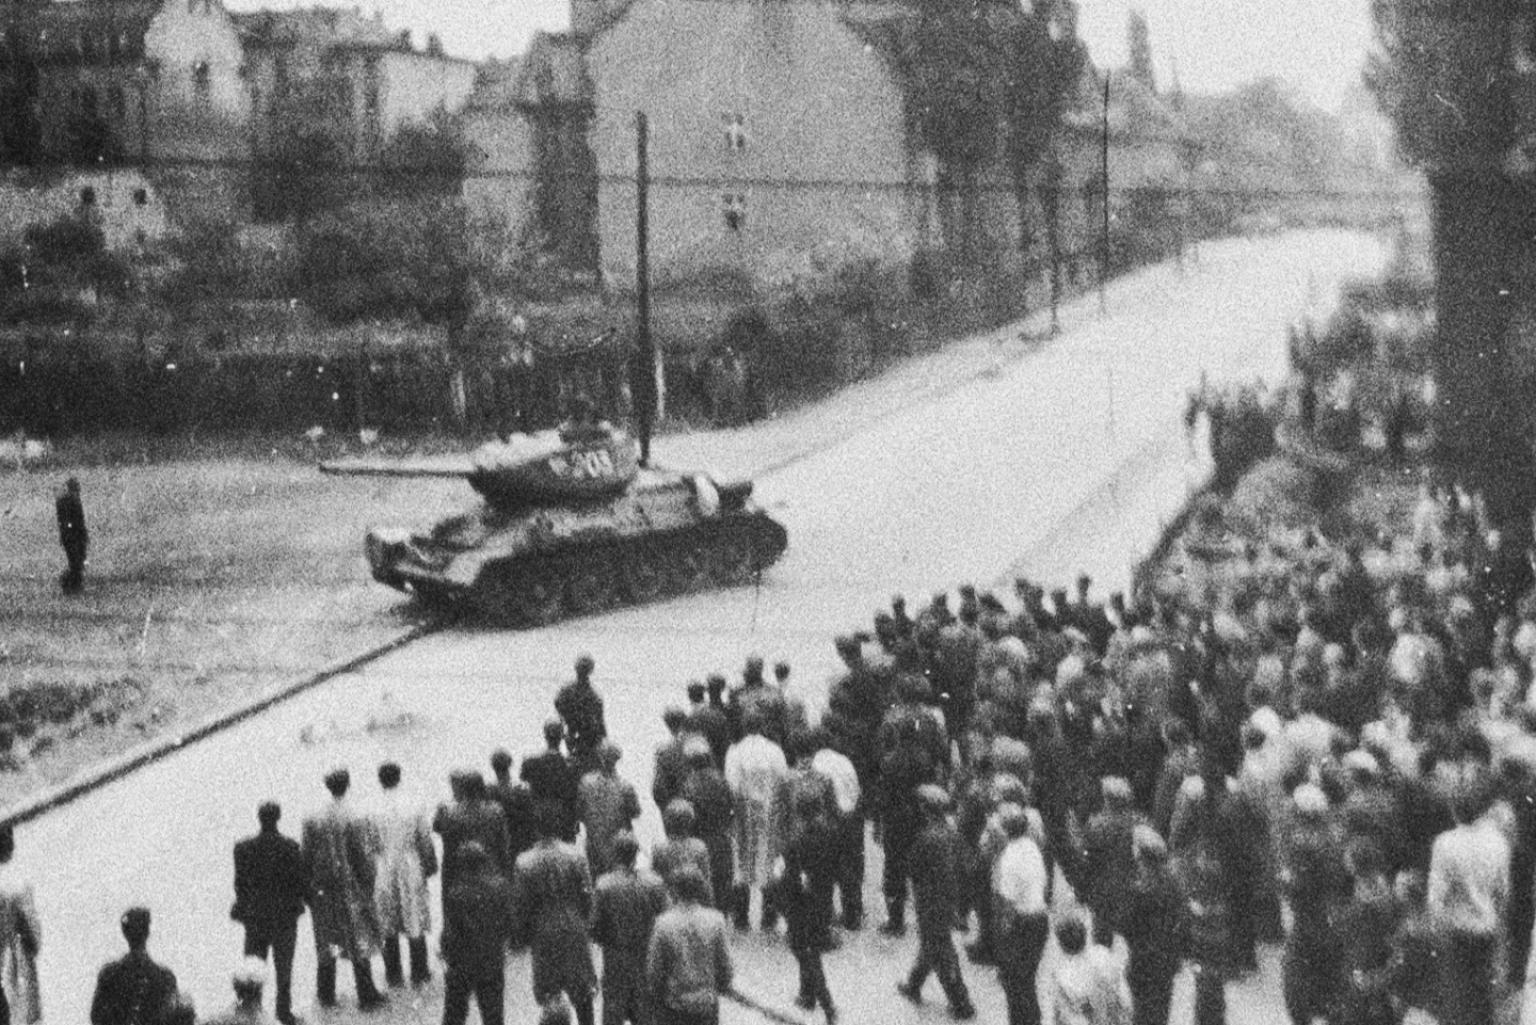 Schwarz-Weiß-Aufnahme: Eine Menschenmenge bewegt sich auf einen Panzer zu, der an einer Straßenecke steht.